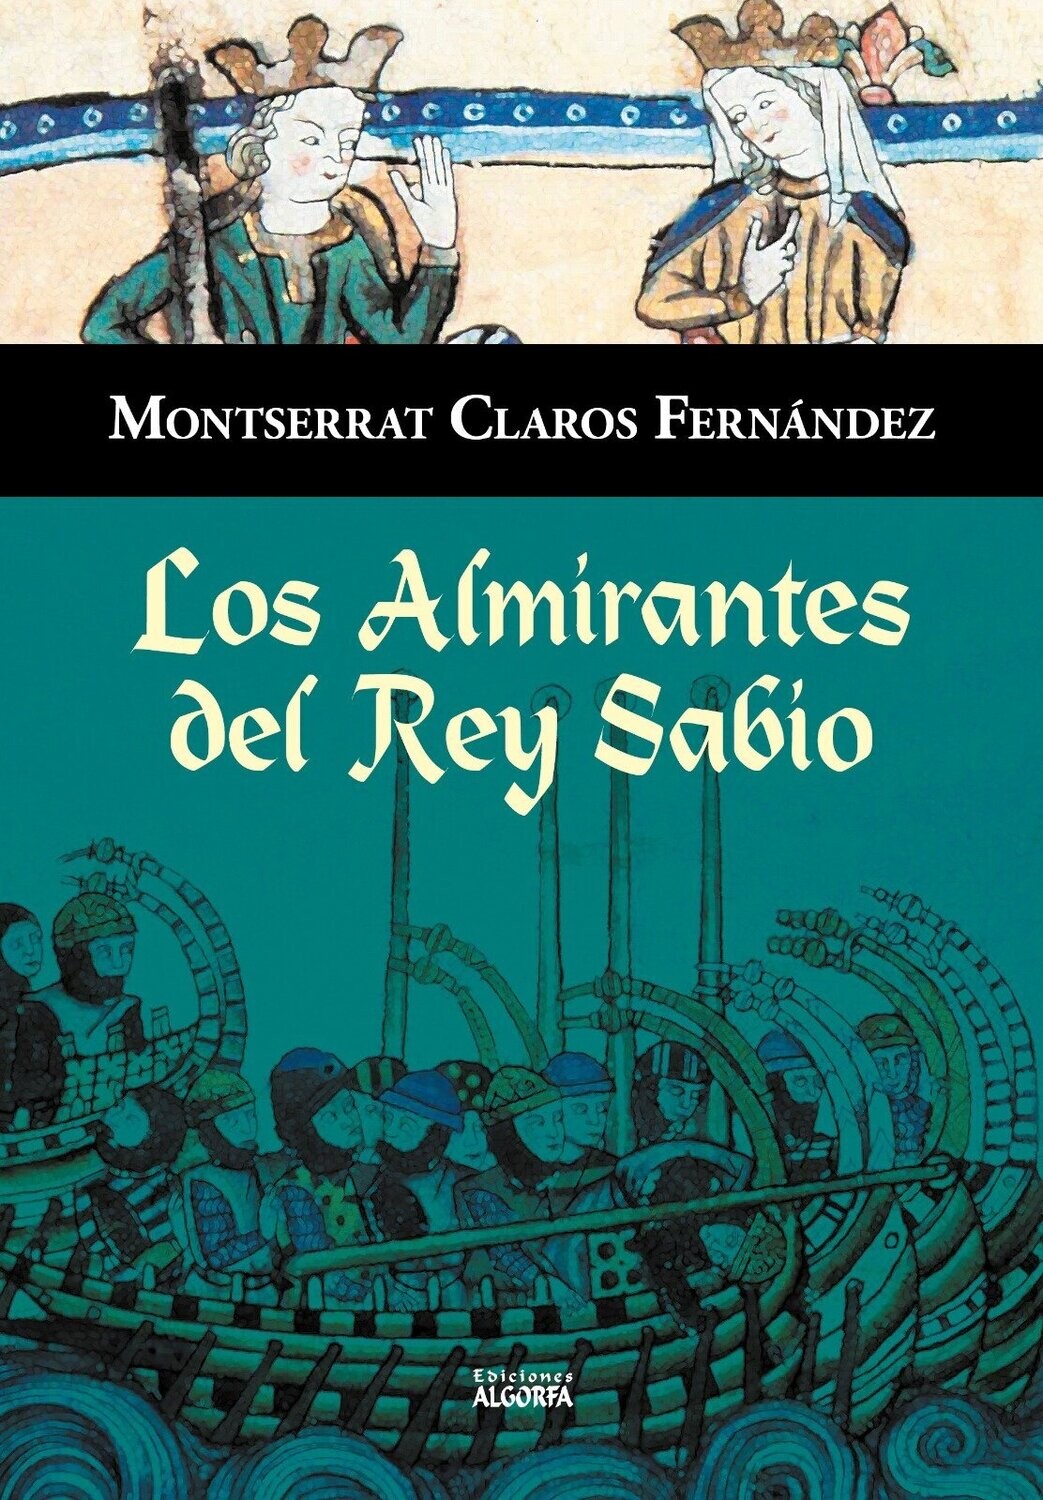 LOS ALMIRANTES DEL REY SABIO.
Montserrat Claros Fernández